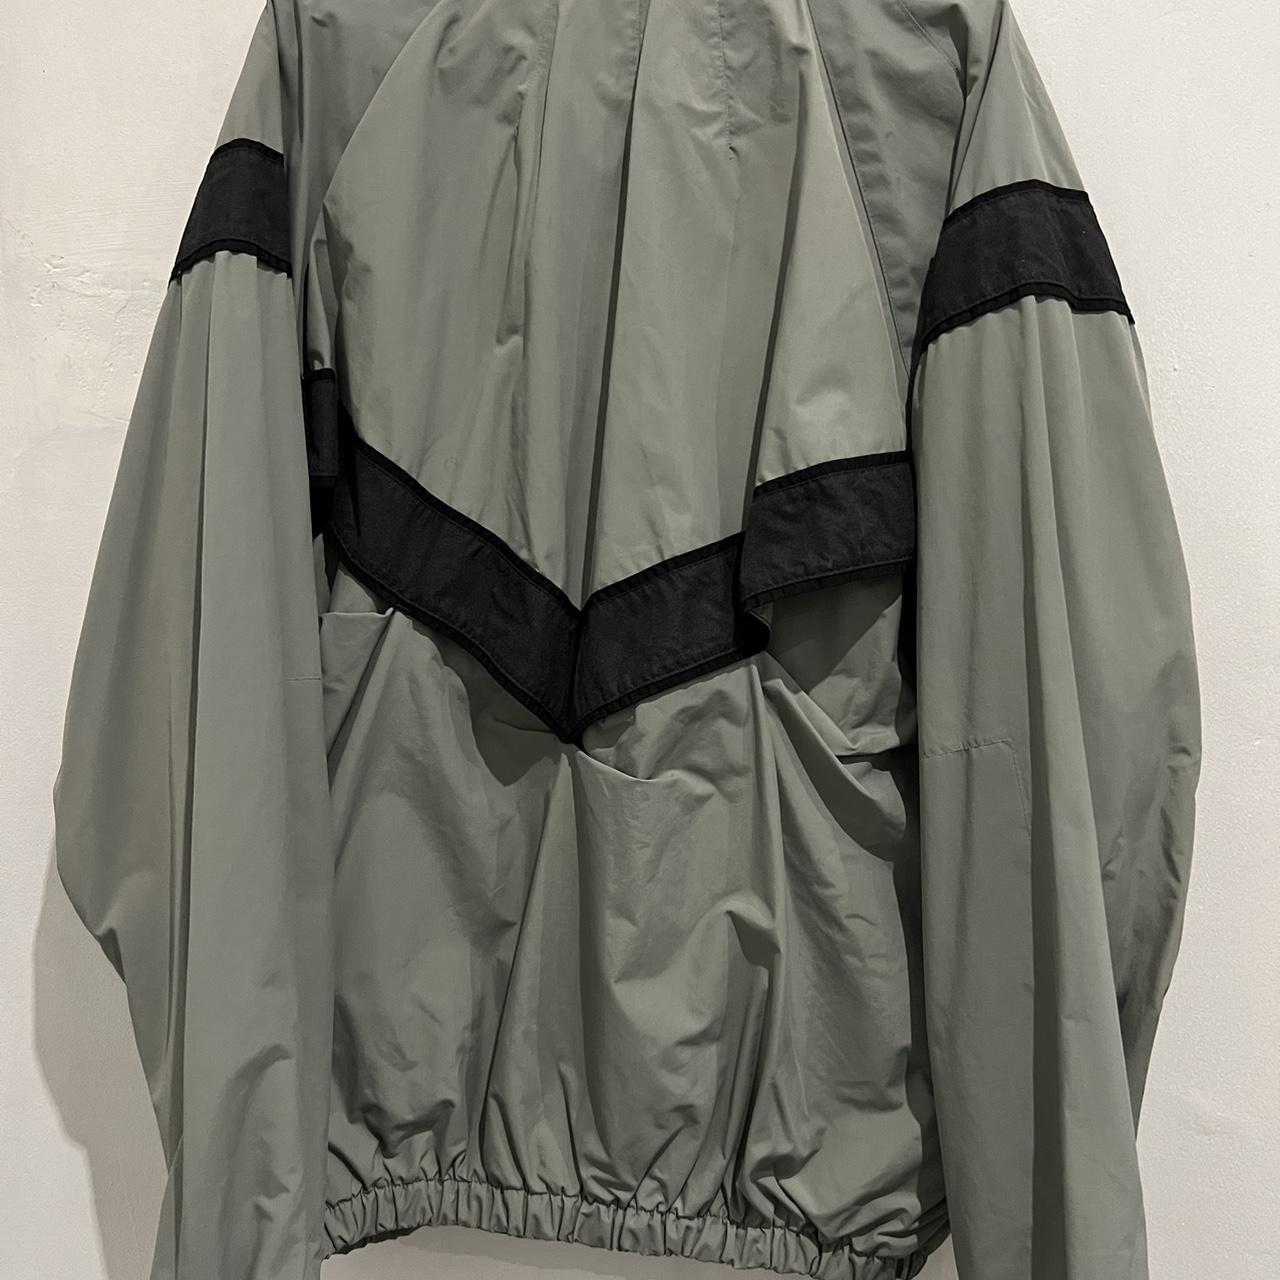 Grey ‘Army’ Windbreaker Waterproof Jacket Size... - Depop